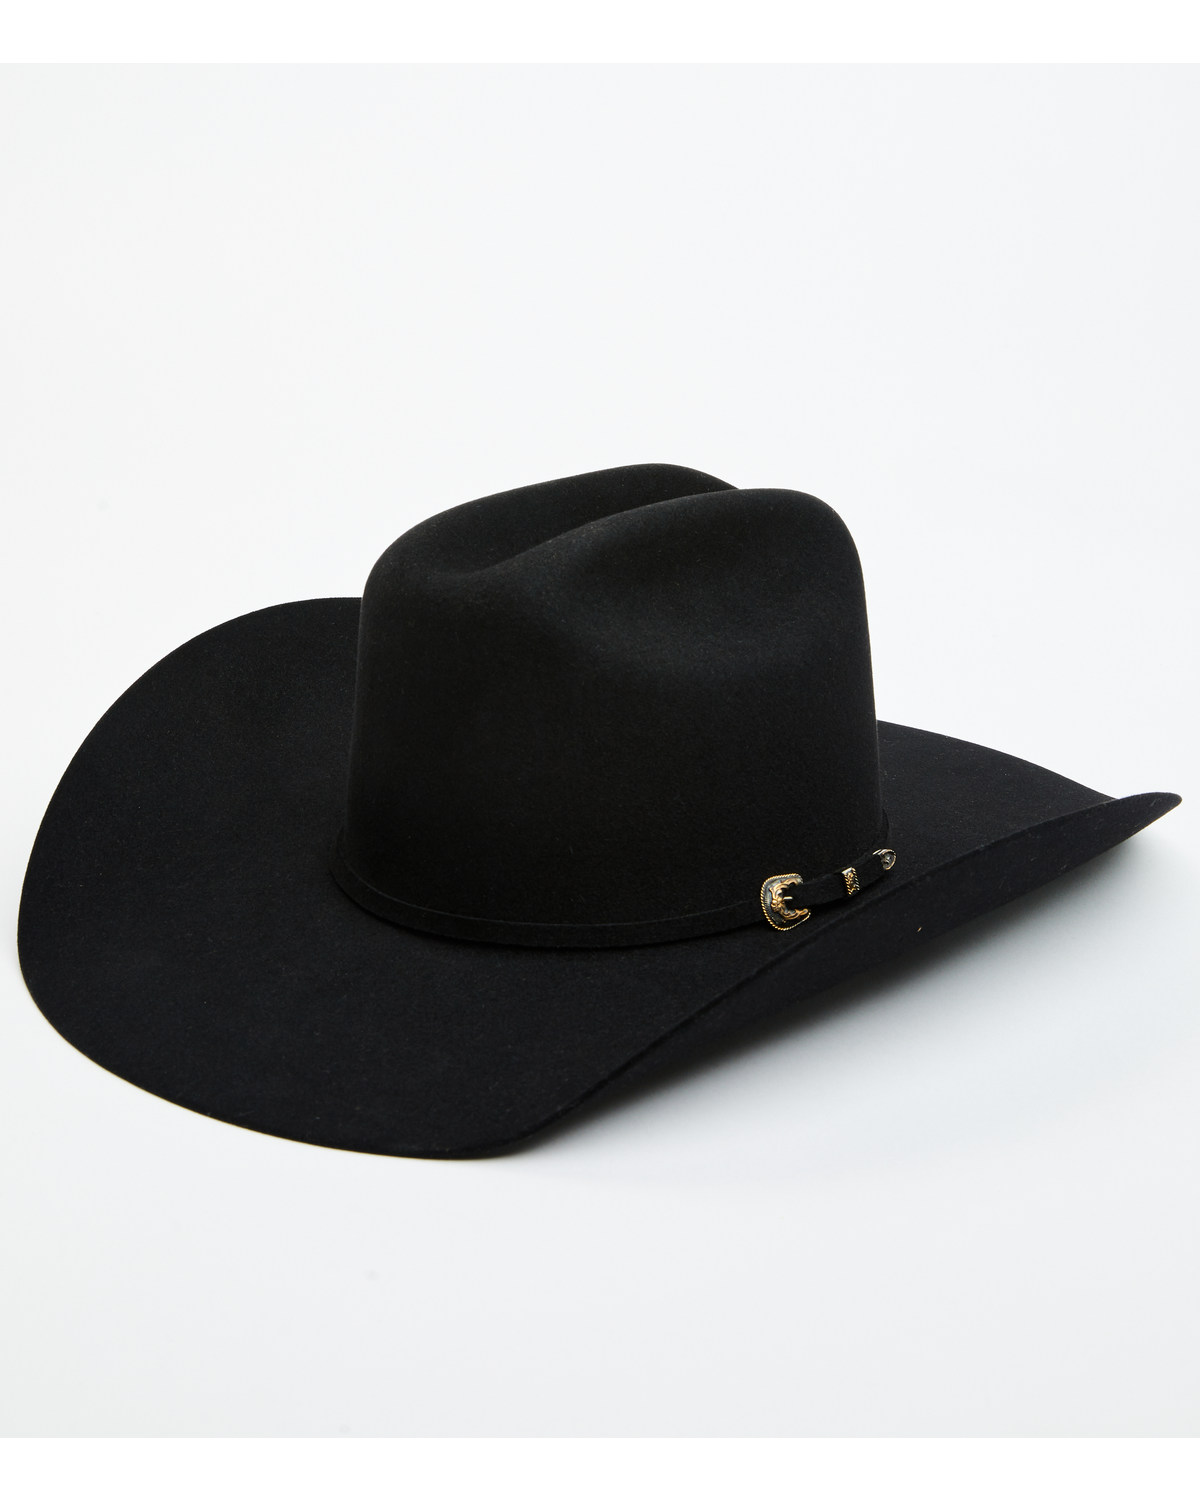 Cody James Black 1978® Waco 10X Felt Cowboy Hat